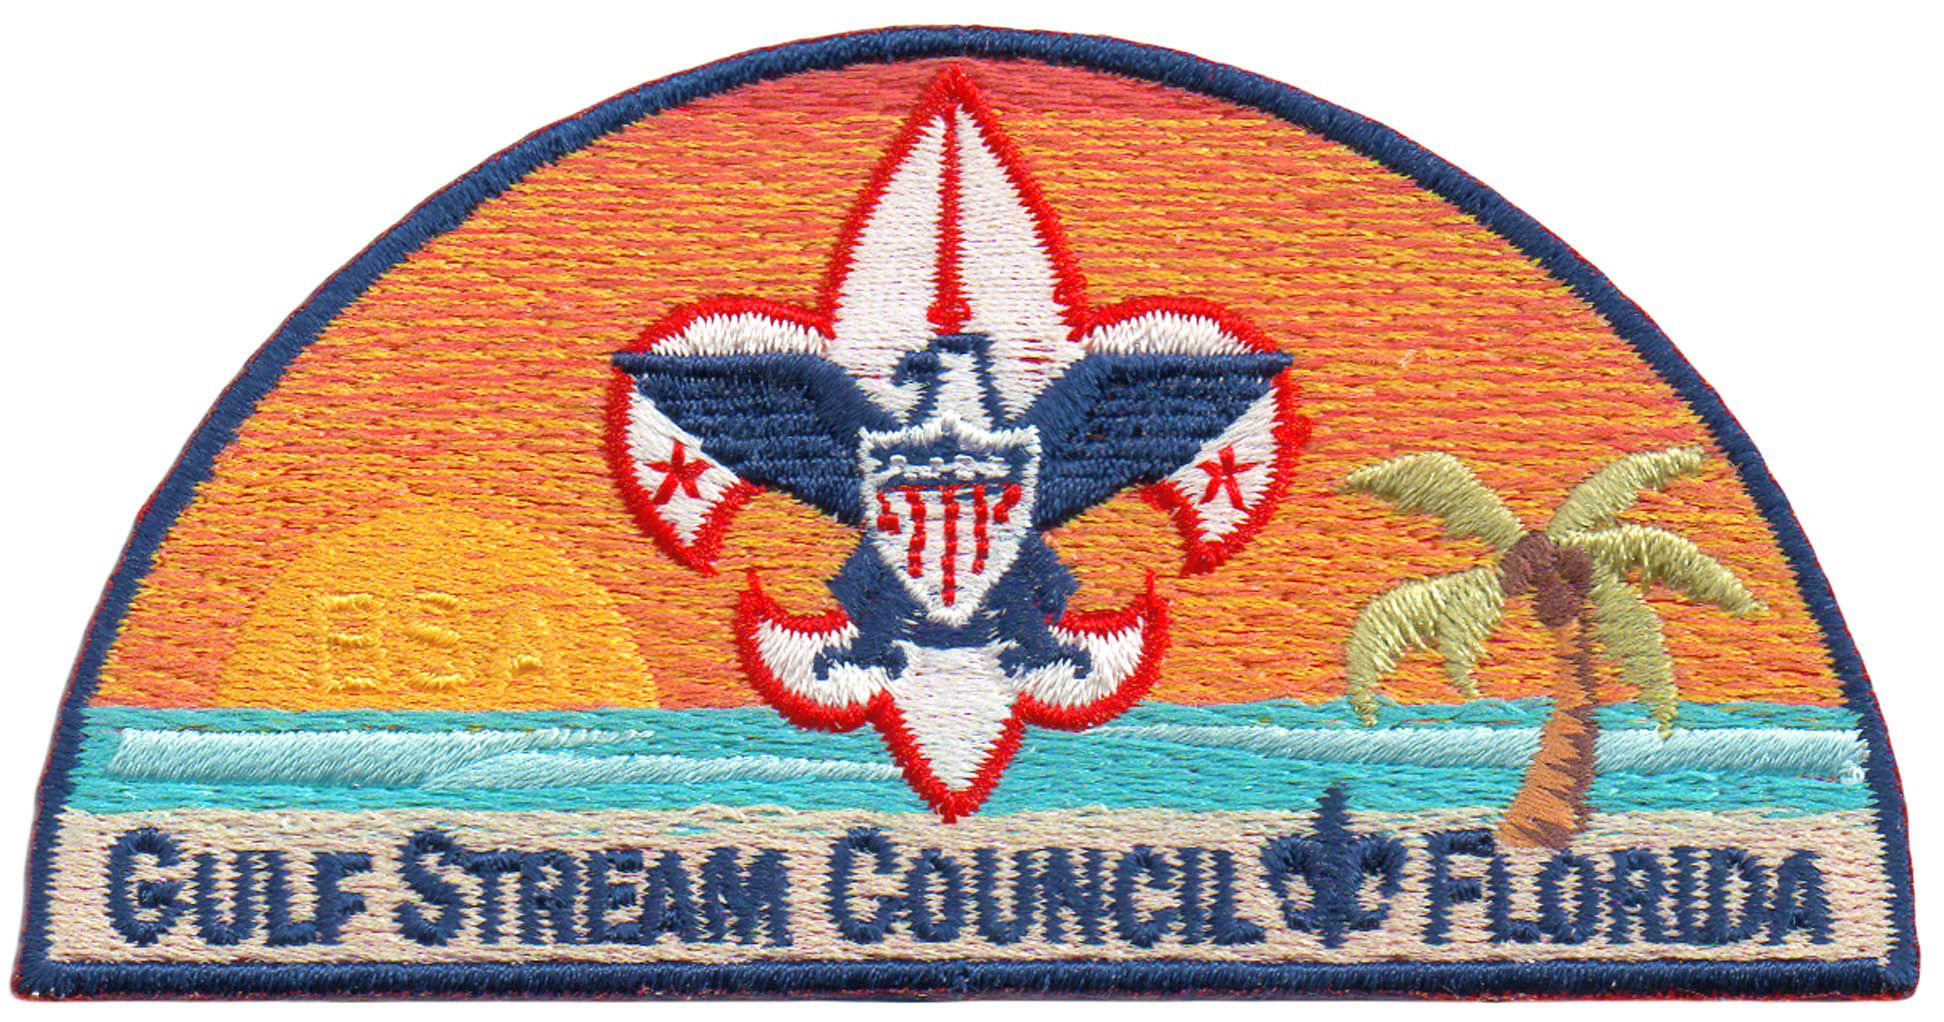 Details about   MOUNT LASSEN AREA T-5 CA sm twil Mgd 1992 Boy Scout CSP Council Patch California 